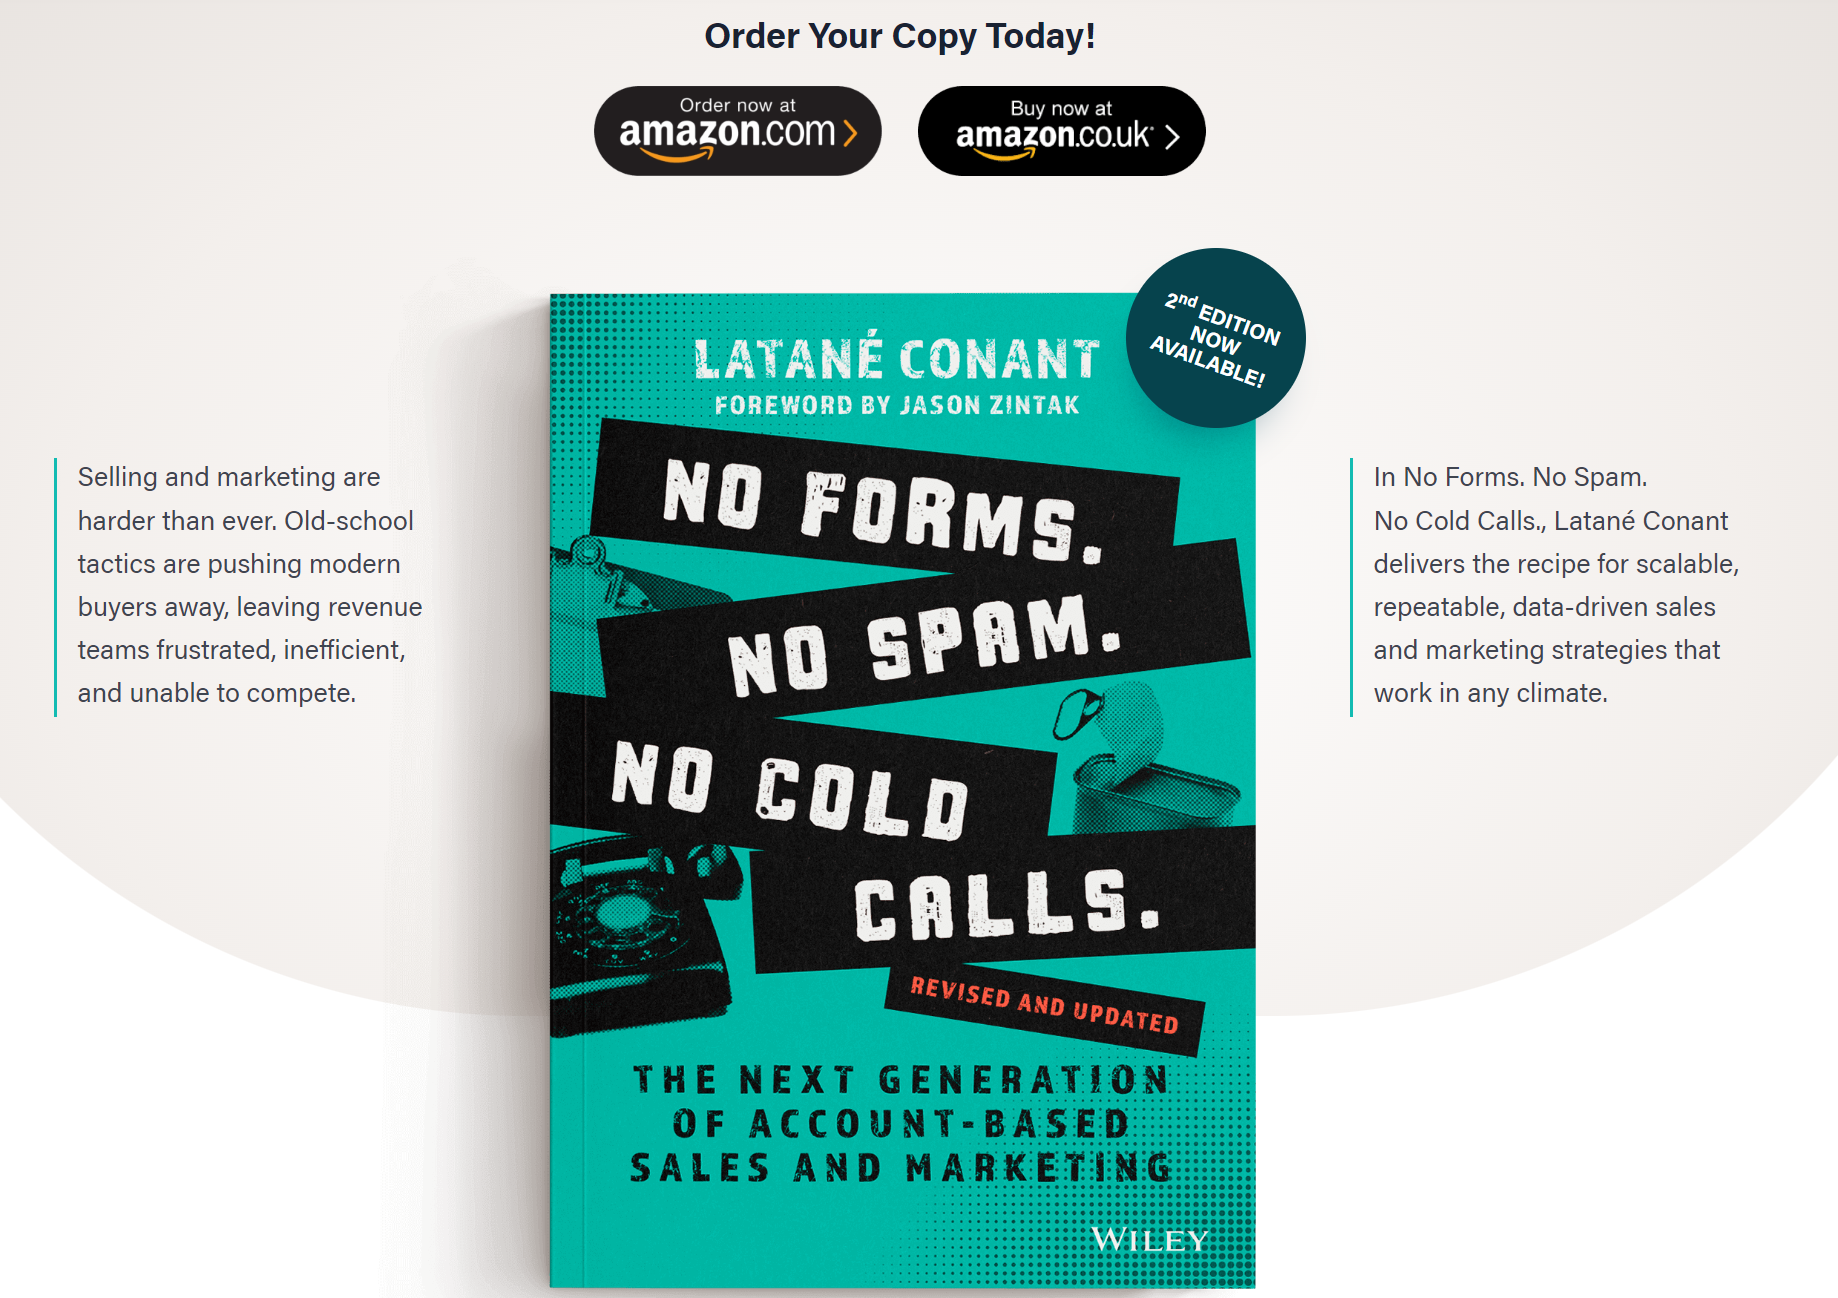 6Sense CMO Latane Conant's popular ABM book: "No forms. No Spam. No Cold Calls."